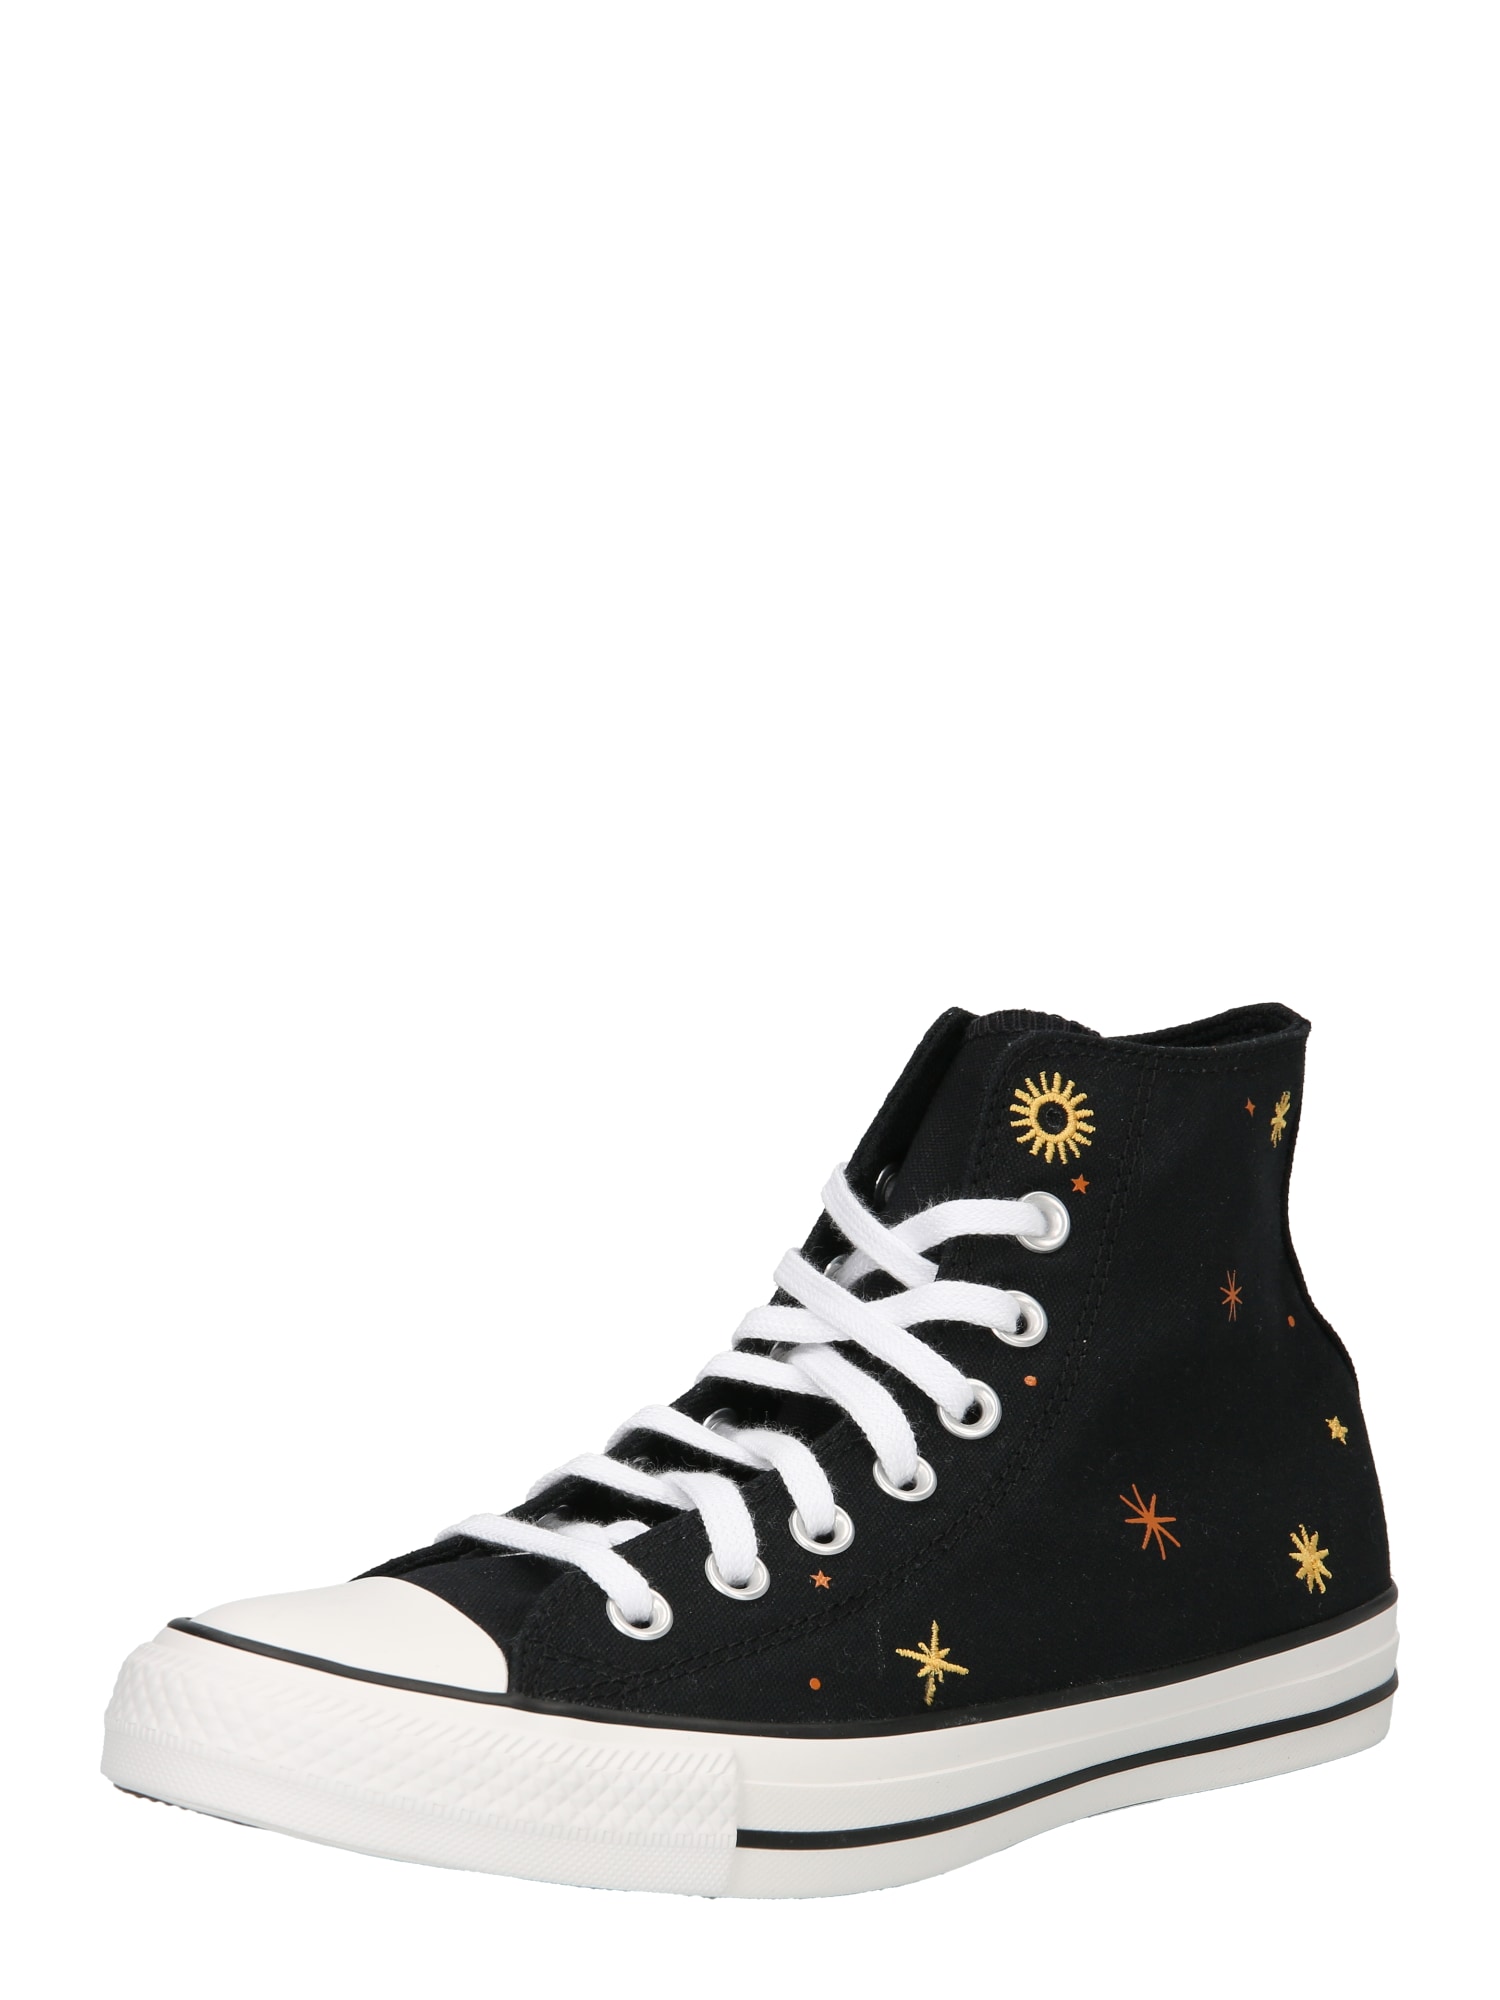 Converse CONVERSE Sneaker 'Chuck Taylor All Star' gelb / hummer / schwarz